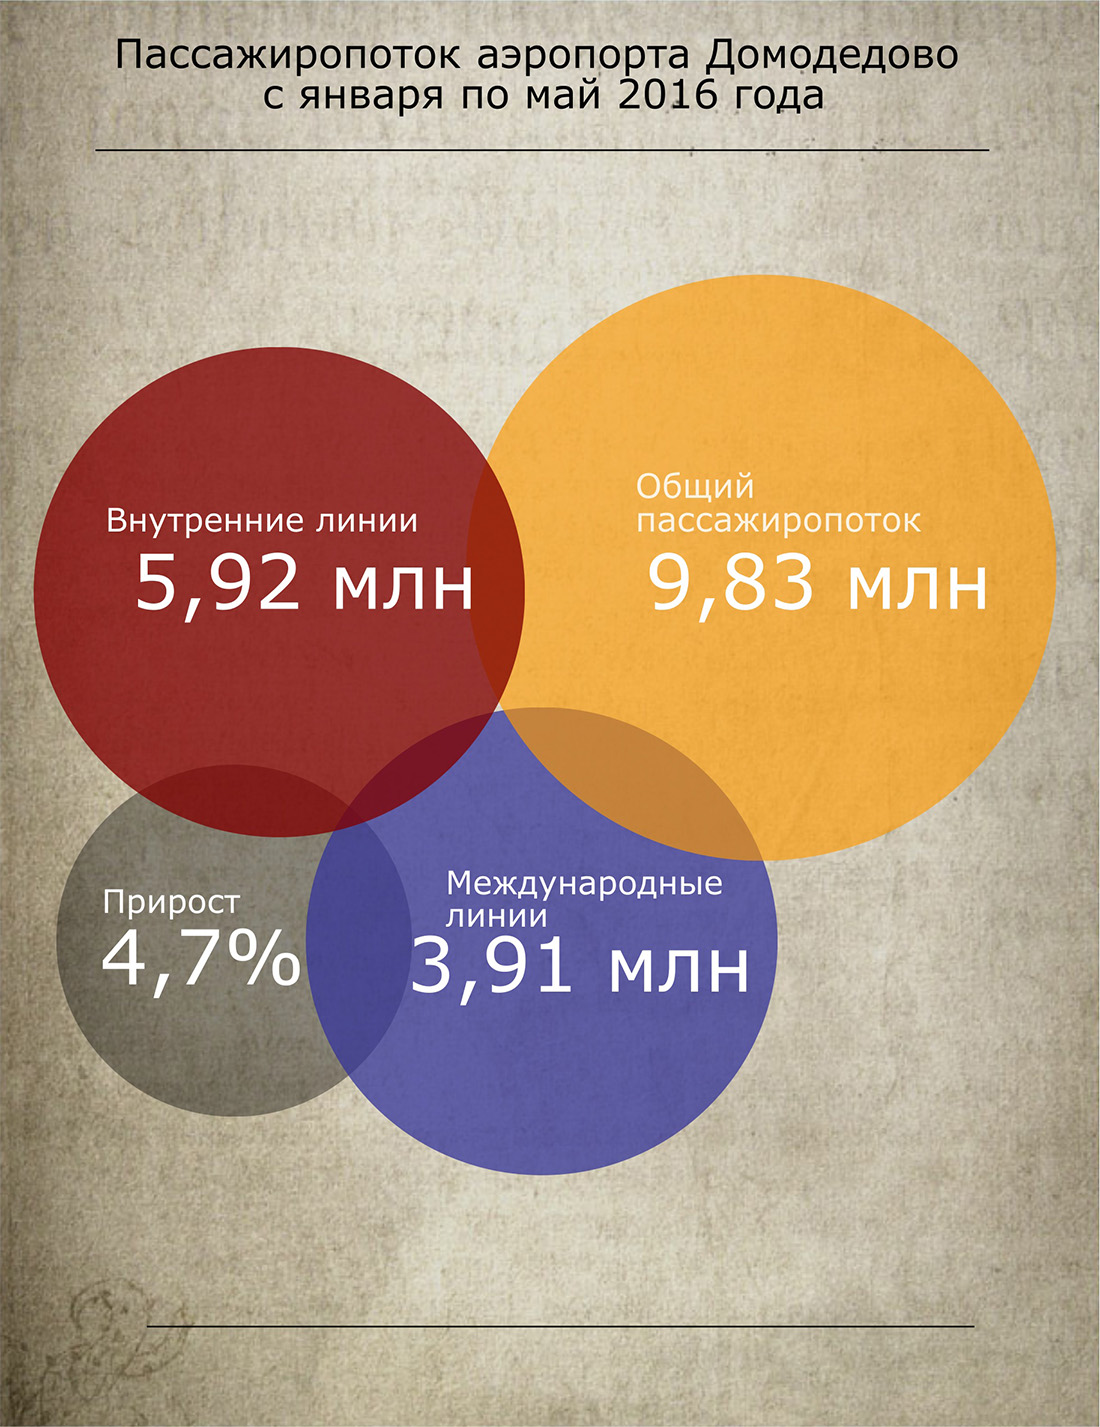 Инфографика пассажиропоток Домодедово